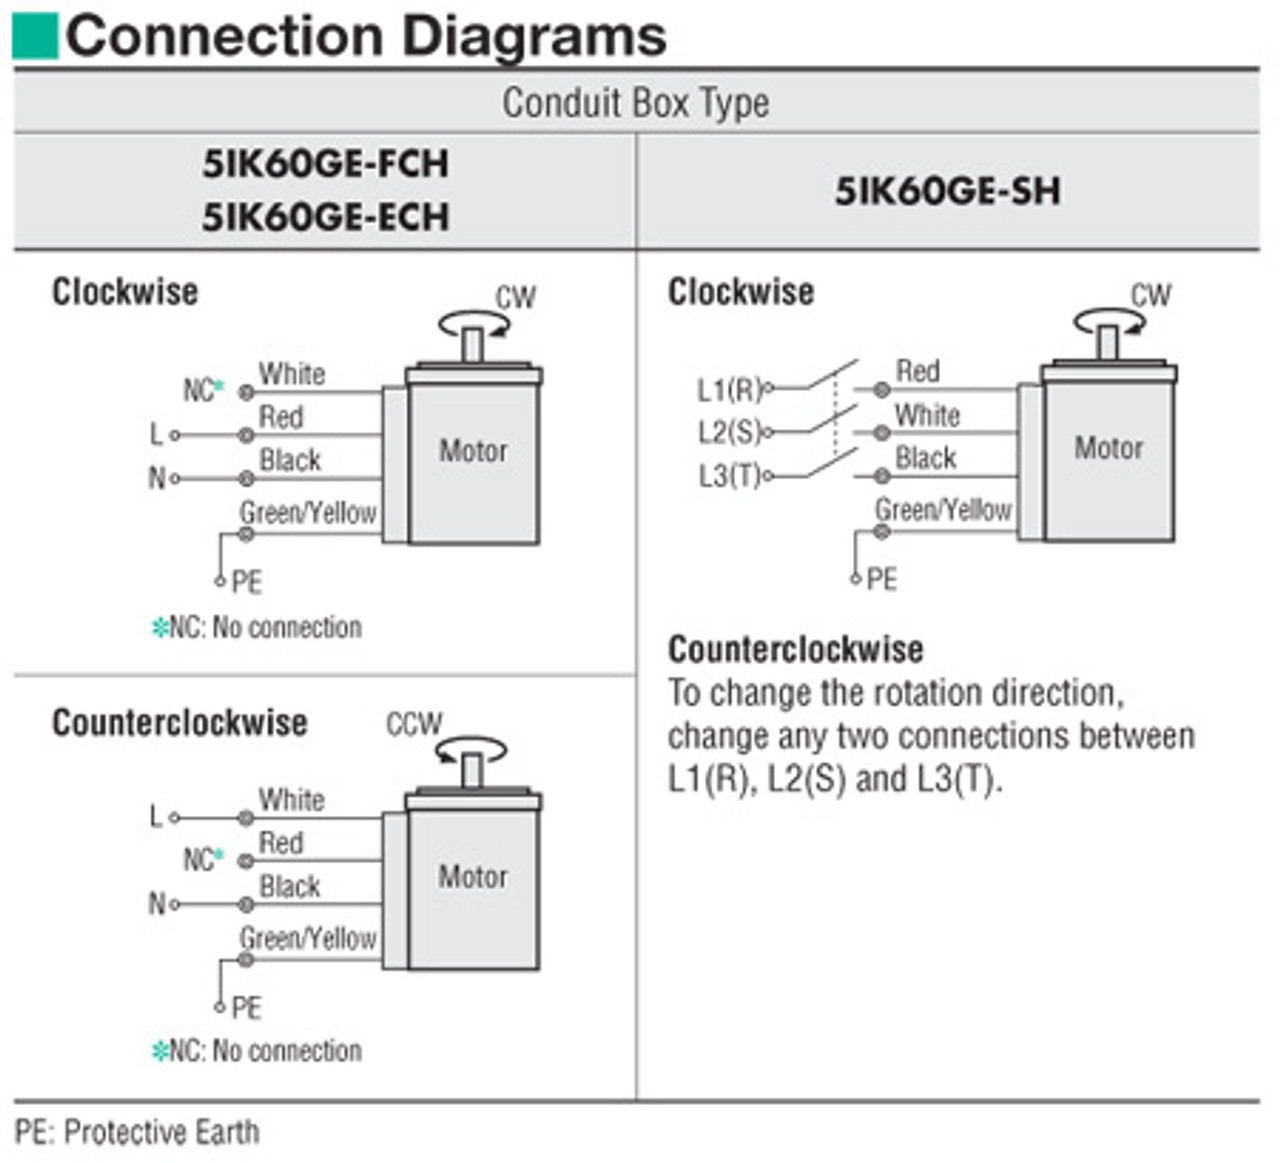 5IK60GE-ECH - Connection